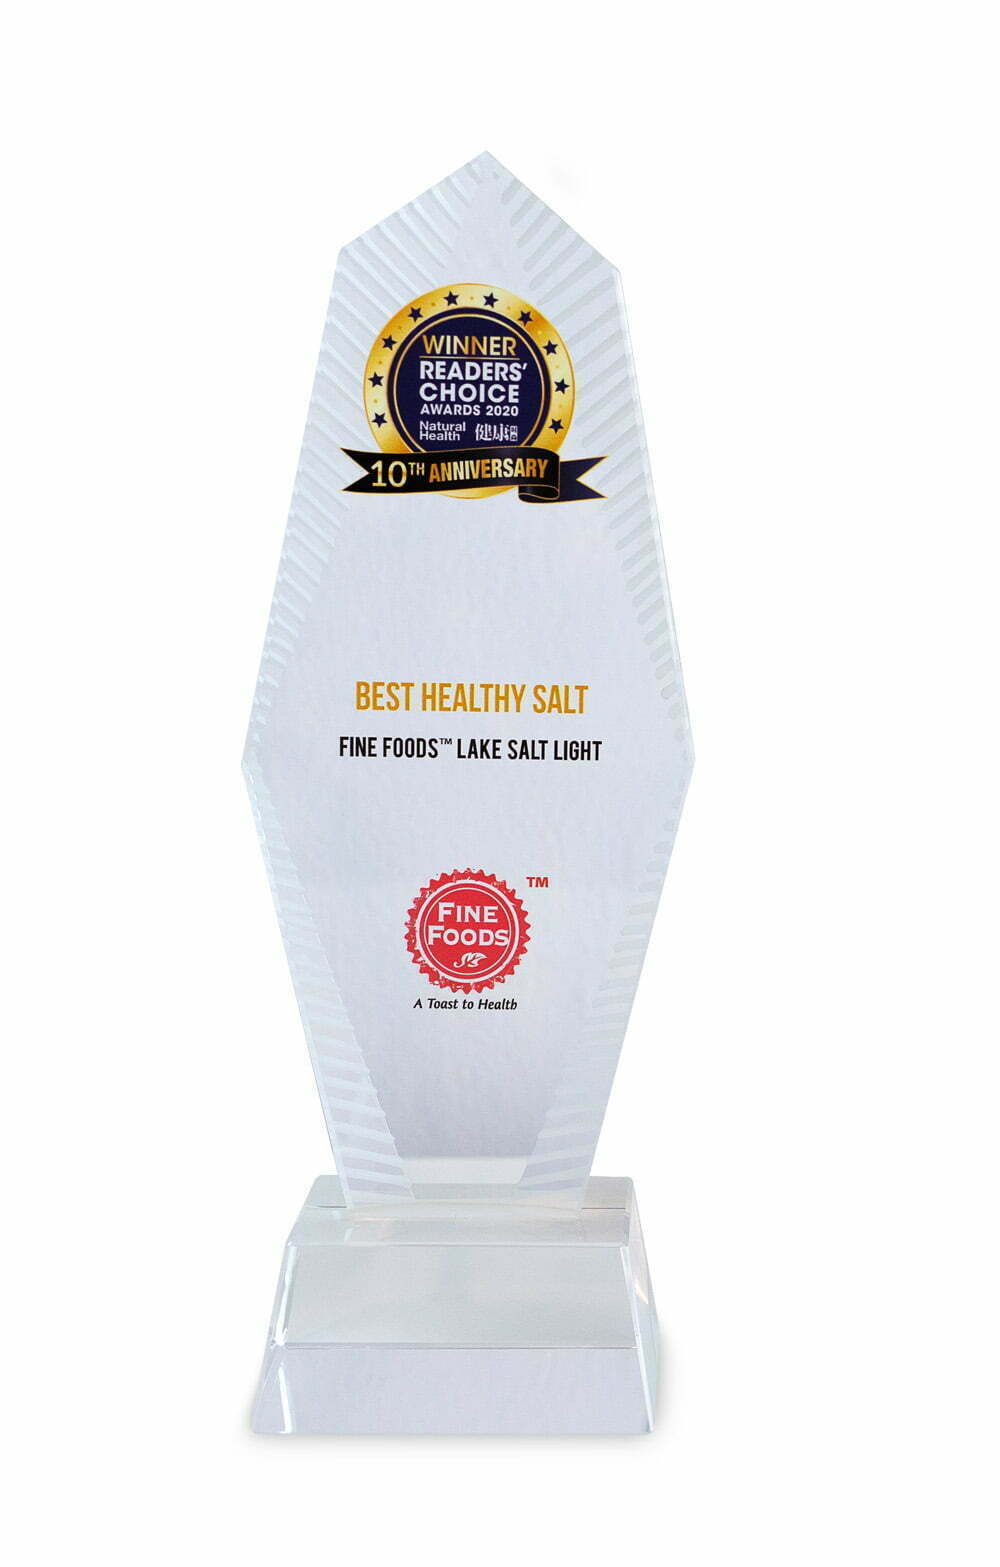 BEST HEALTHY SALT award closeup